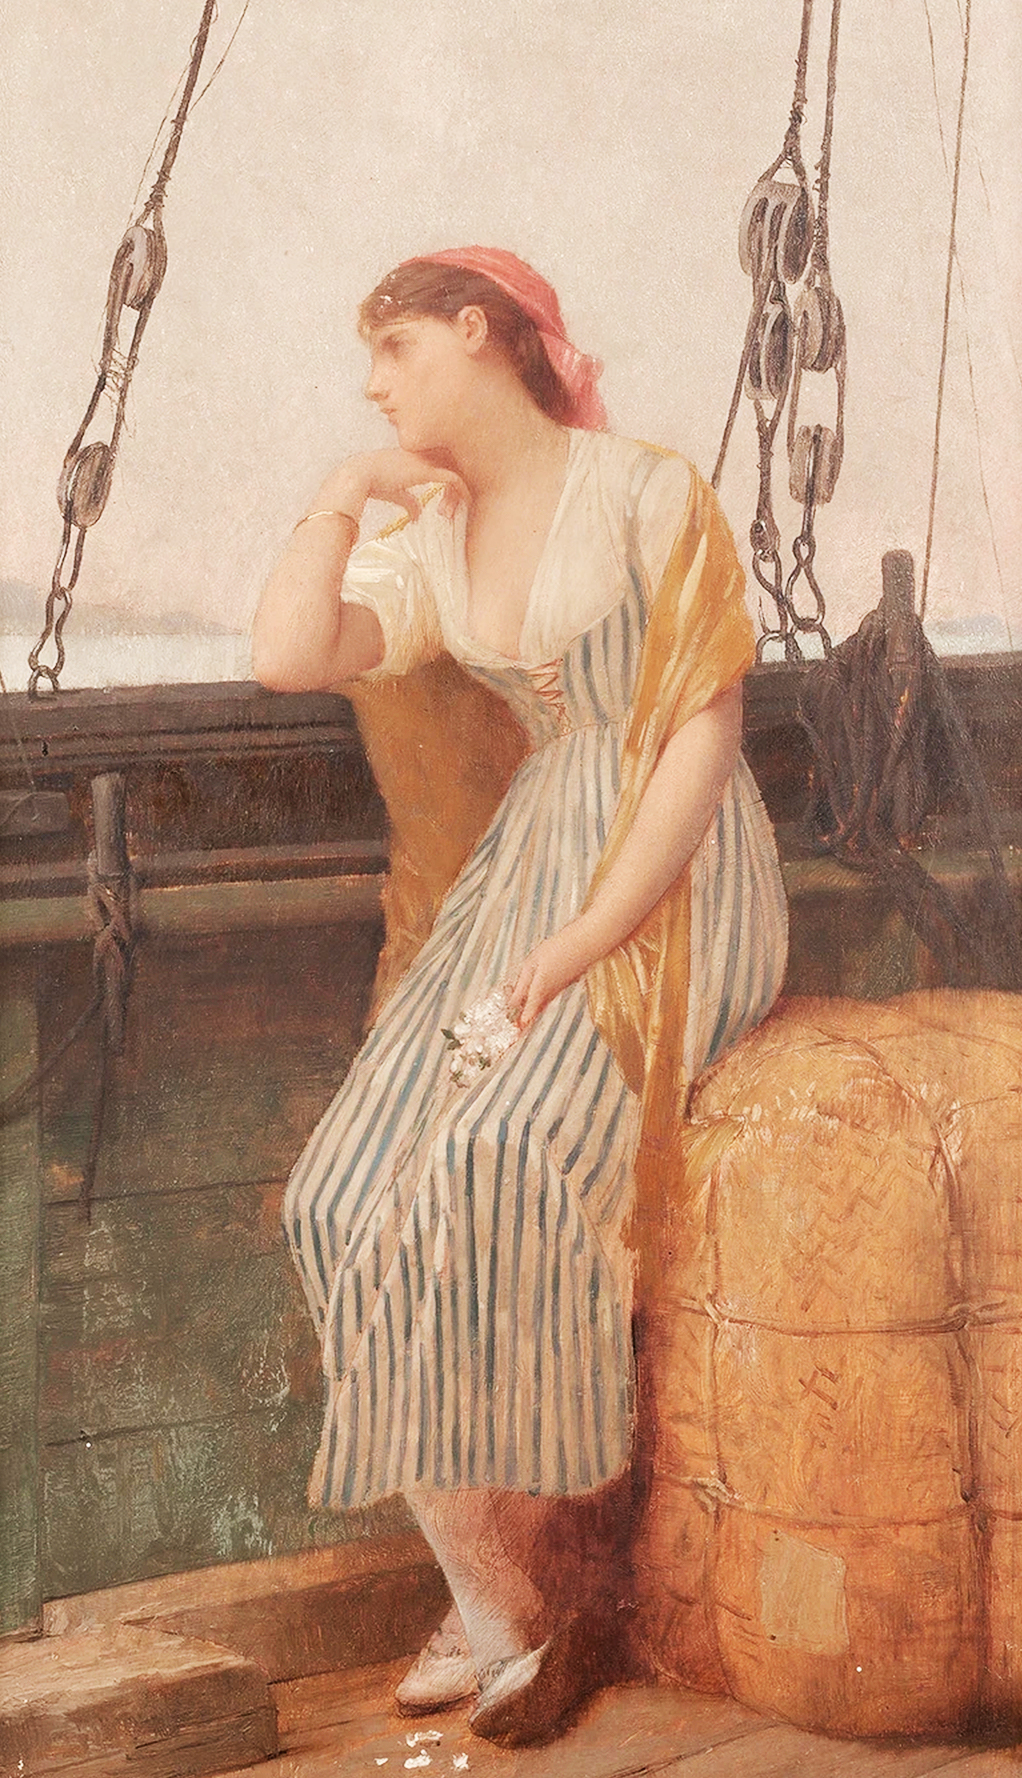 世界著名女性人体油画大师朱利斯·约瑟夫·列斐伏尔的油画鉴赏